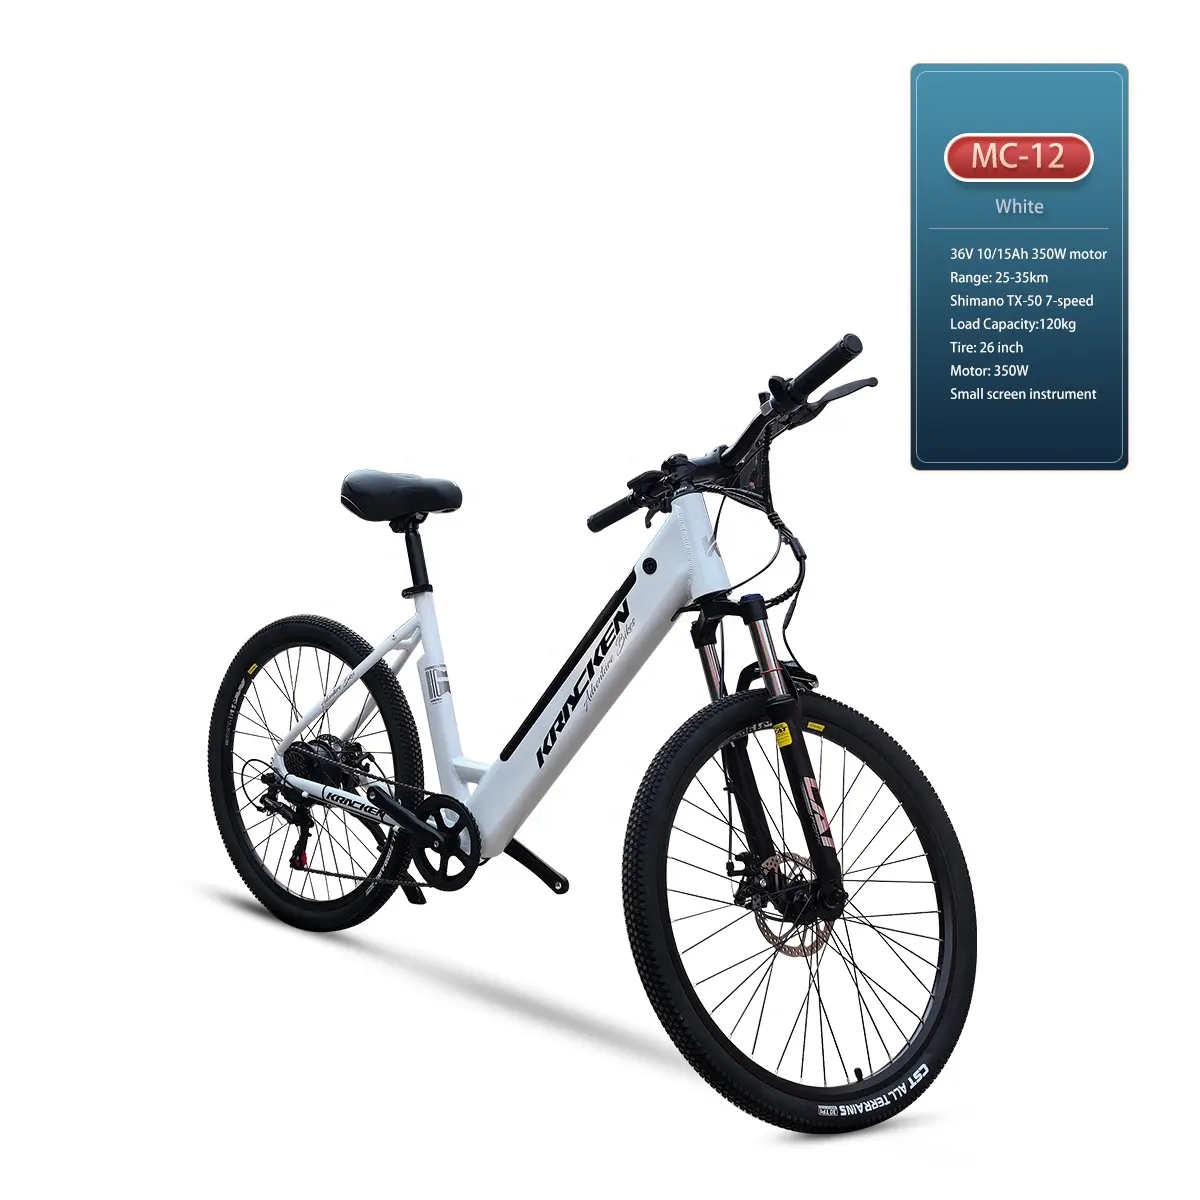 OEM7スピードレディローステップ350W電動自転車26インチモーター電動自転車 (隠しバッテリー付き)